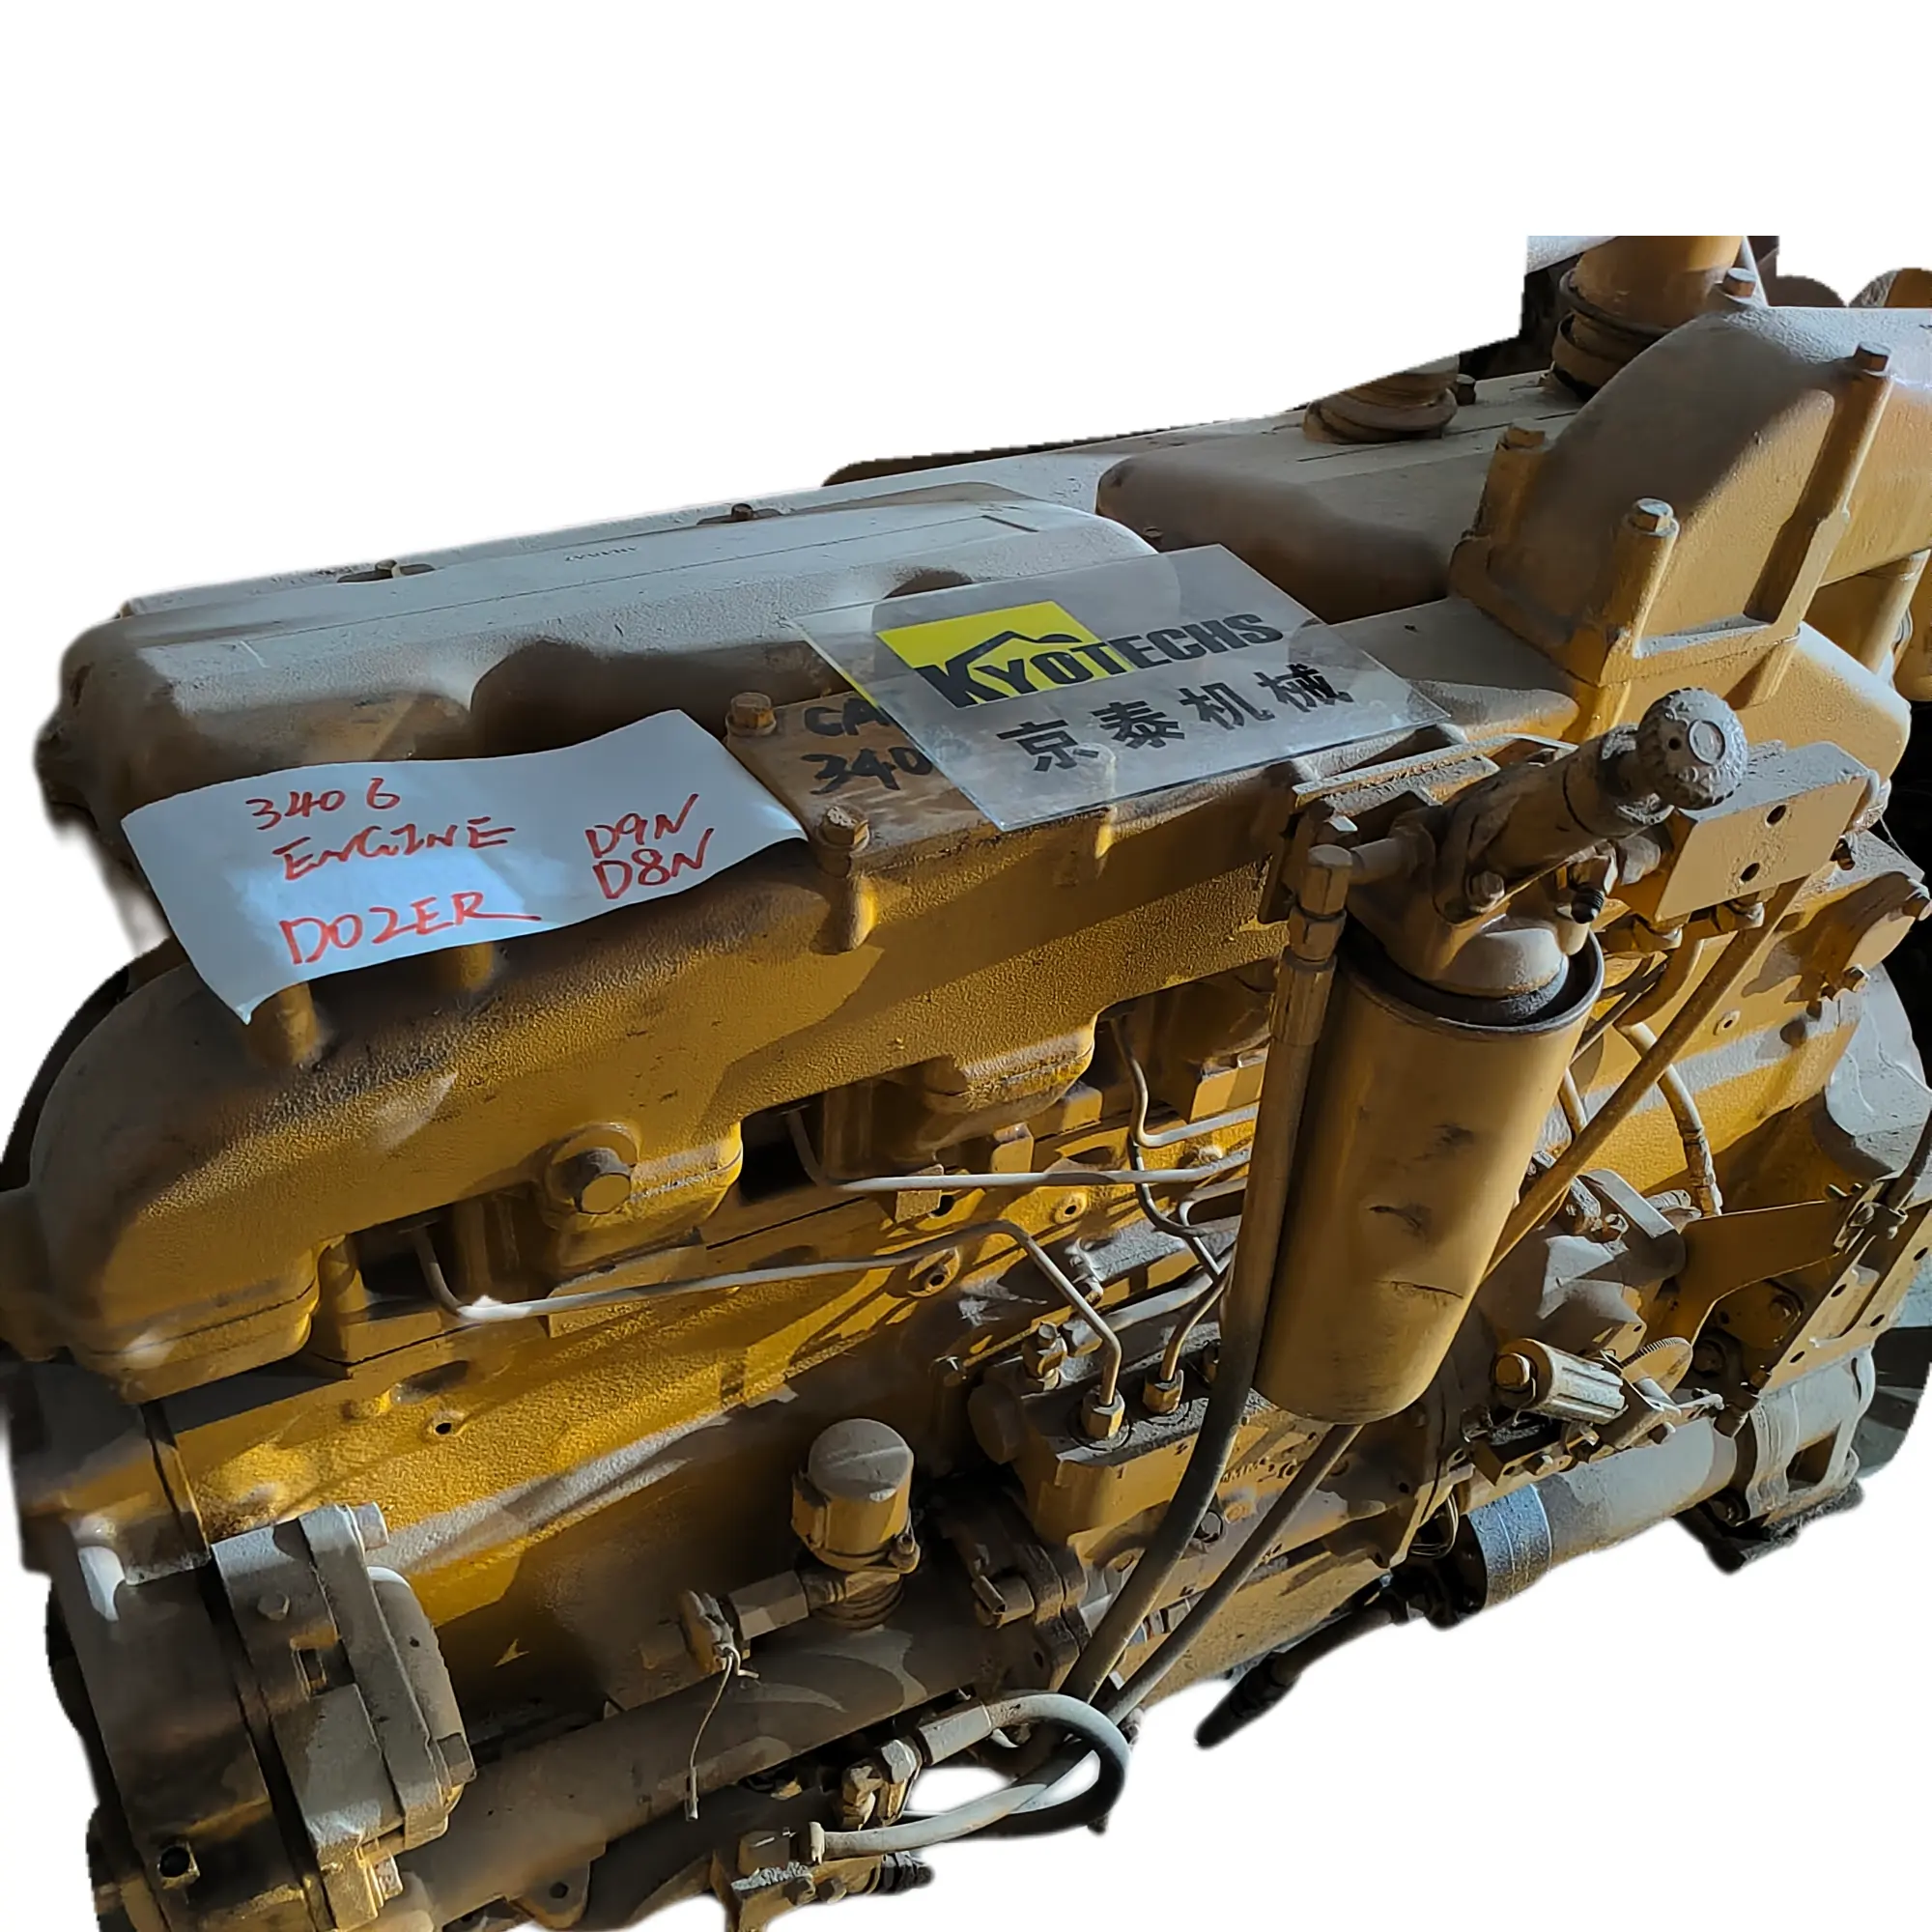 Forklift s4l silindir dizel motor yağı montaj S4L2 motorlar-montaj uluslararası mxt motor